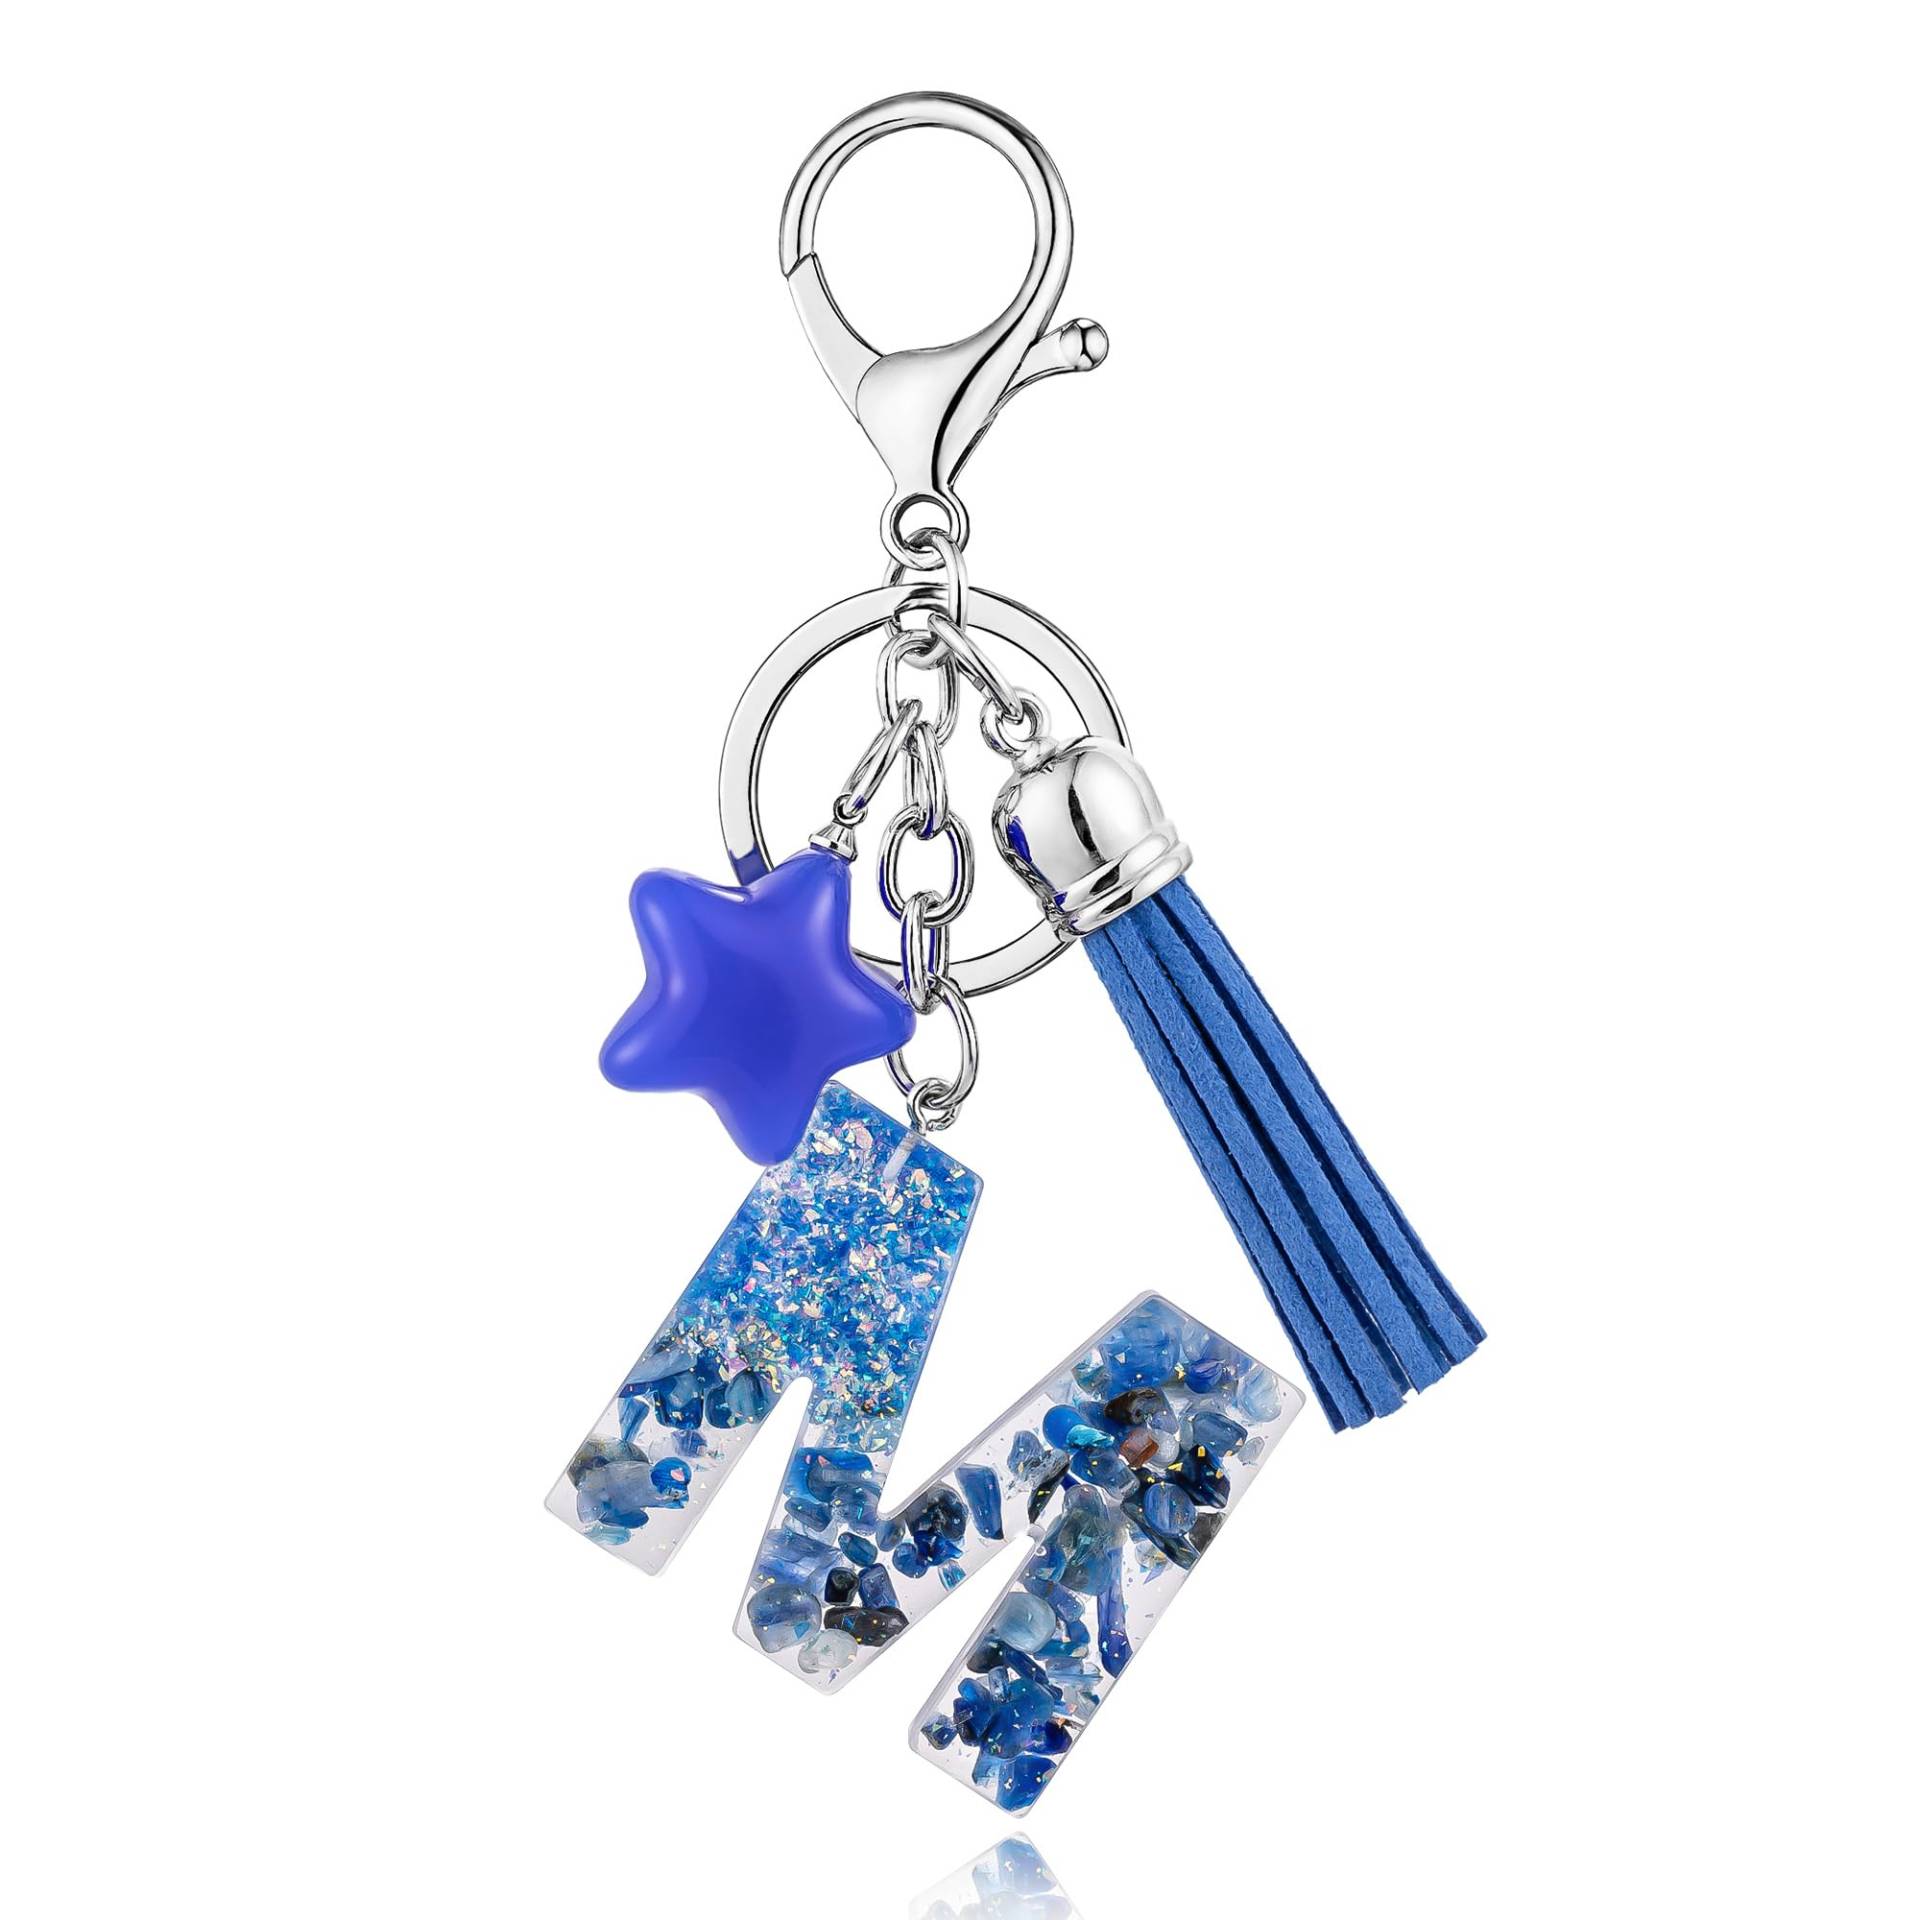 SELOVO Blaue Initiale Schlüsselanhänger Quaste Buchstabe Alphabet Stern Tasche Charm Schlüsselanhänger - blau - Medium von SELOVO